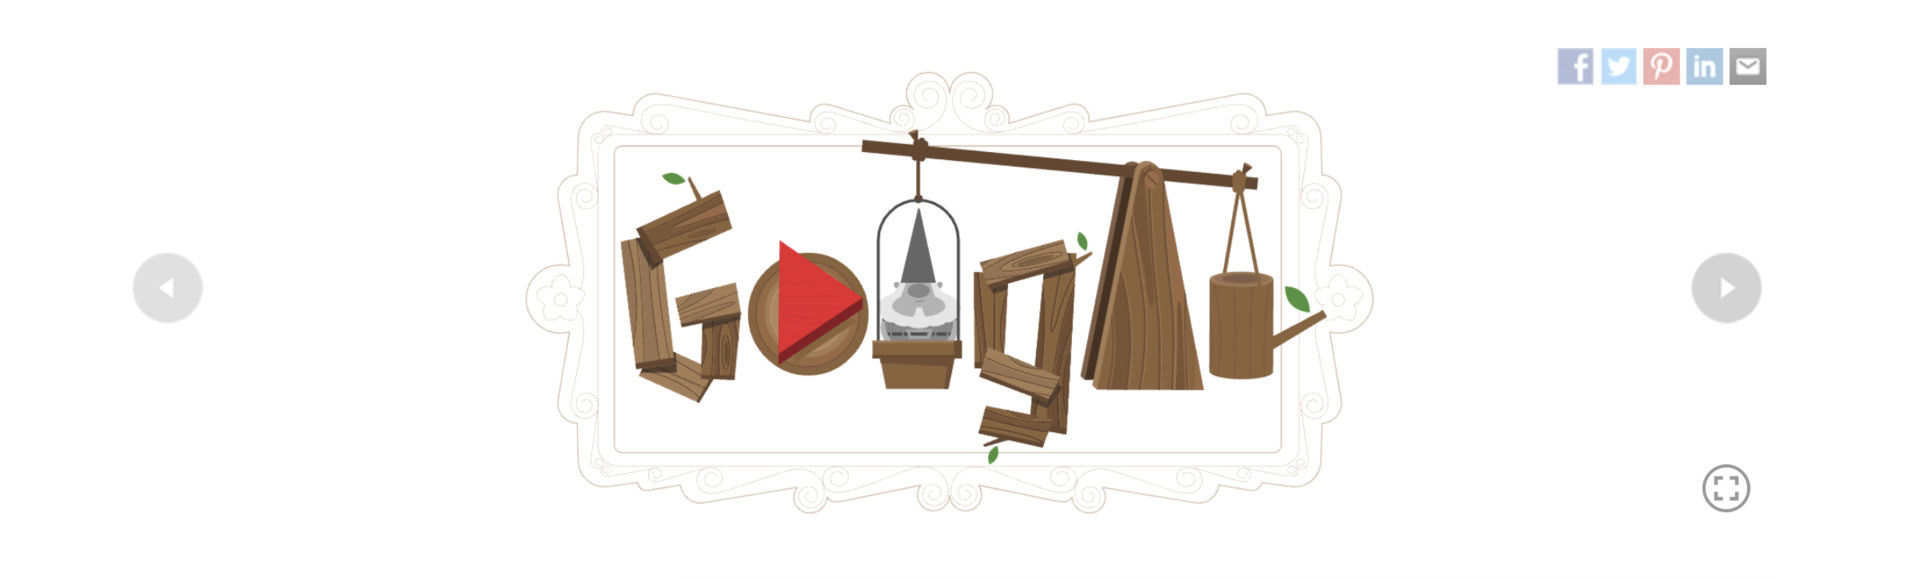 google doodle garden gnomes